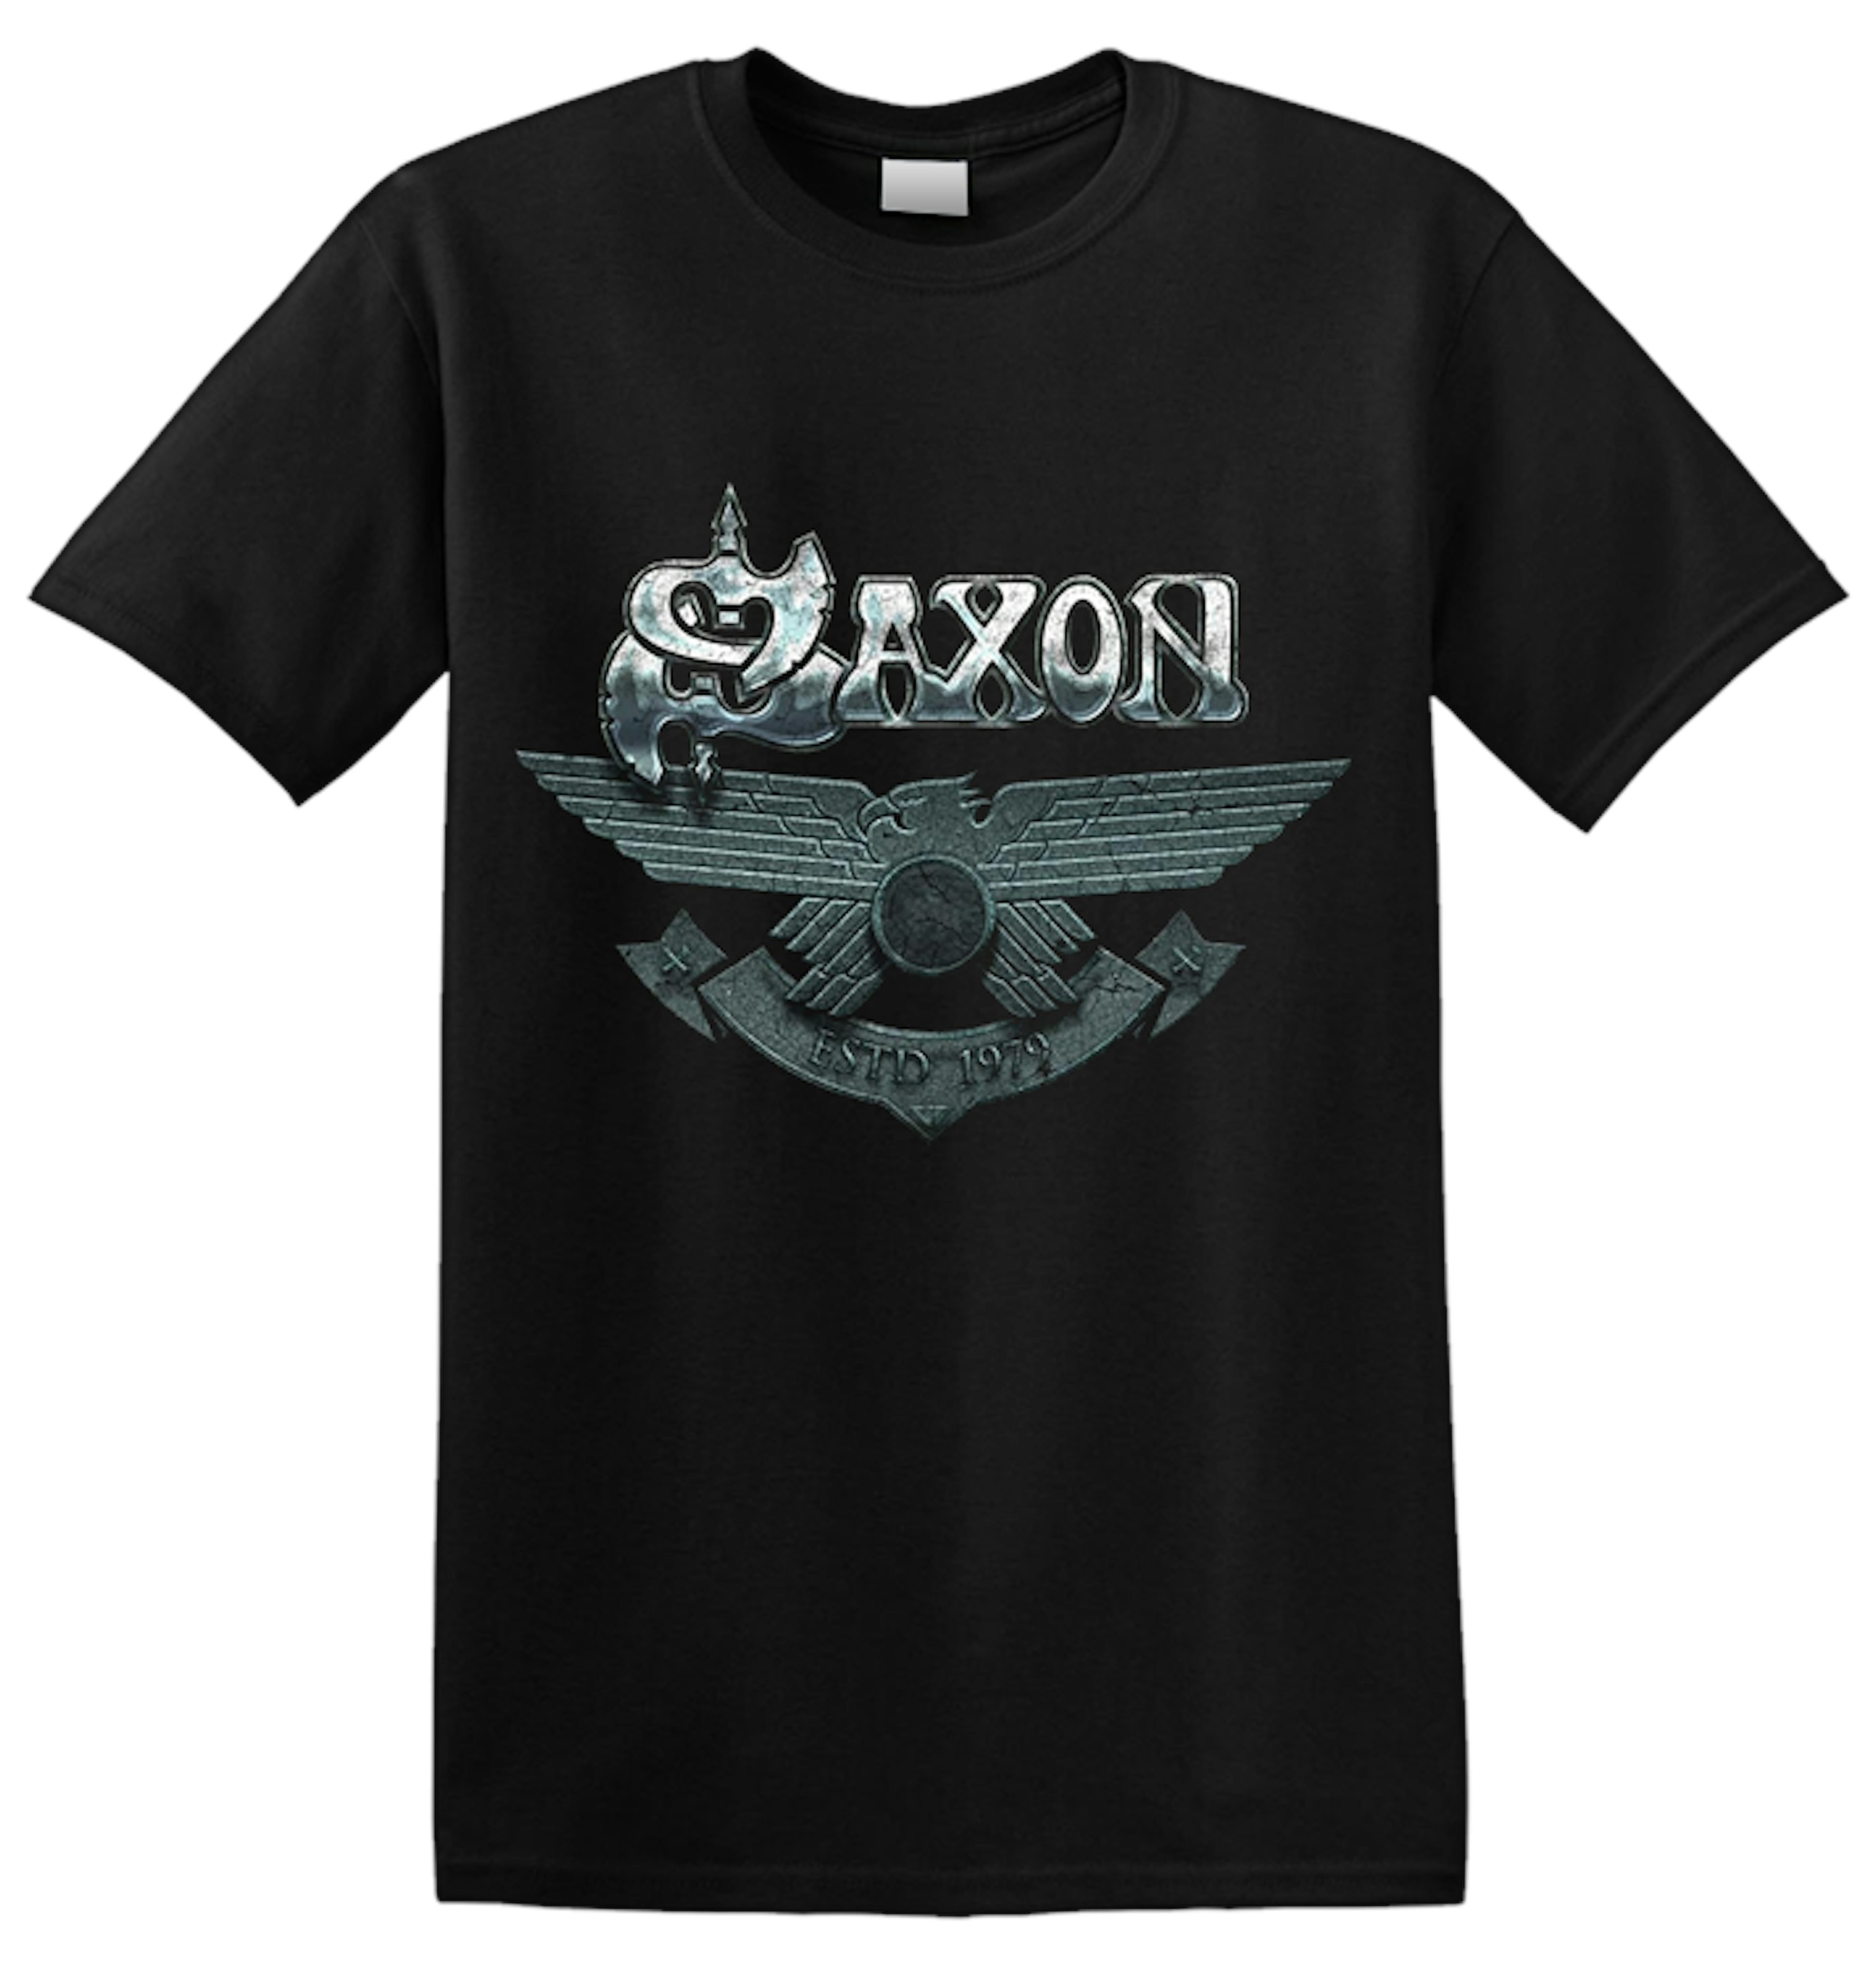 Saxon 'Est. 1979' T-Shirt